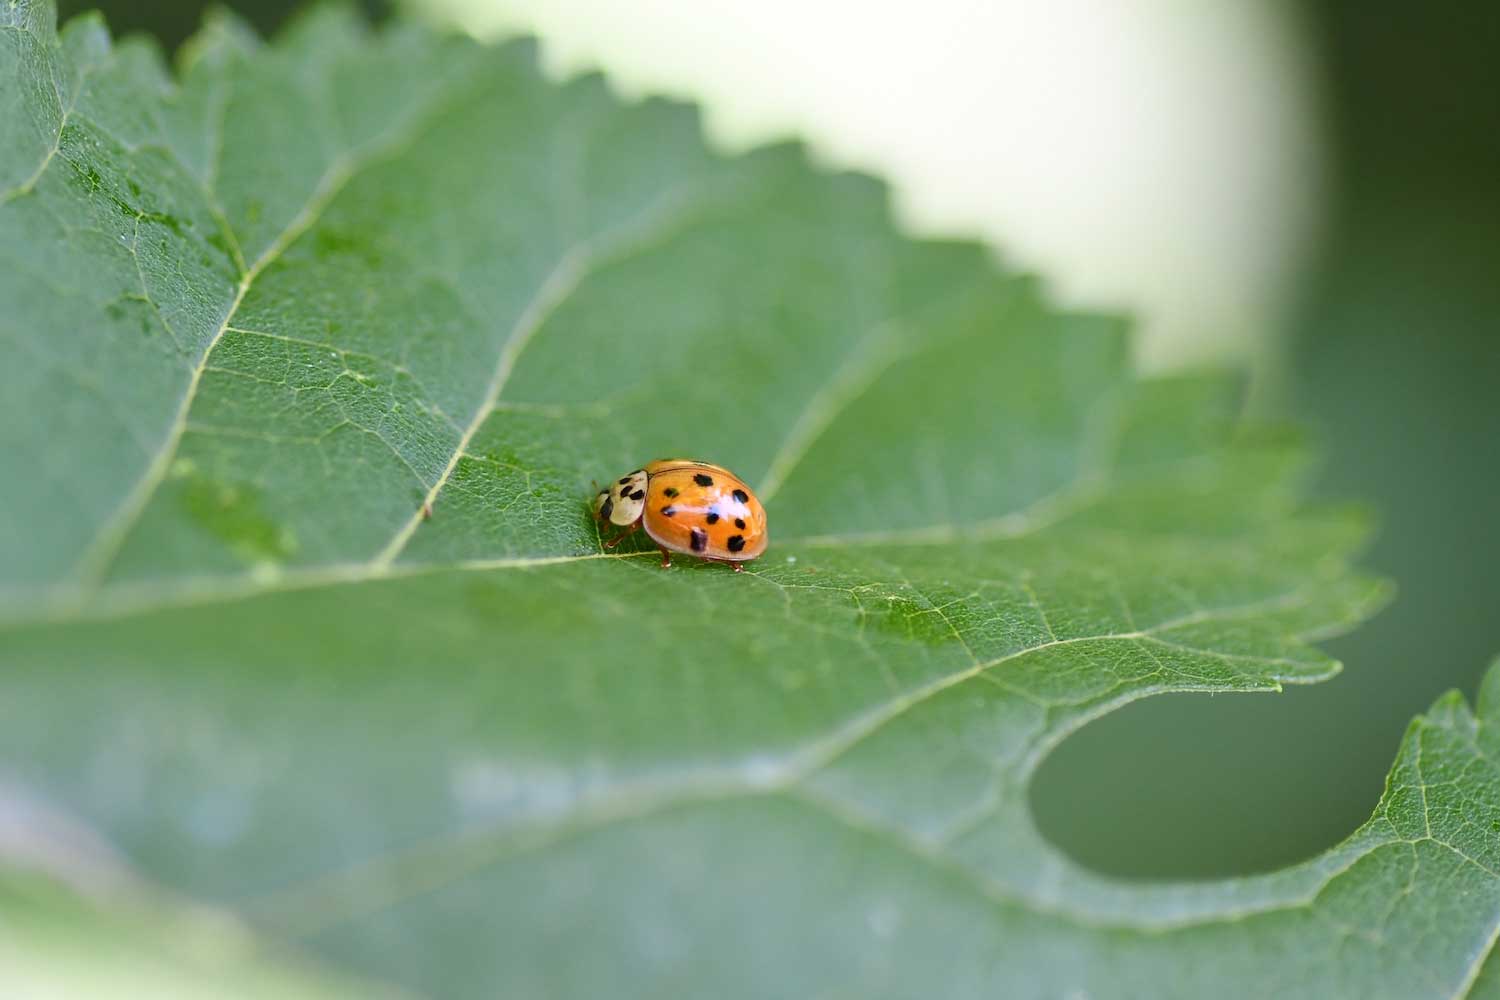 A ladybug on a green leaf.